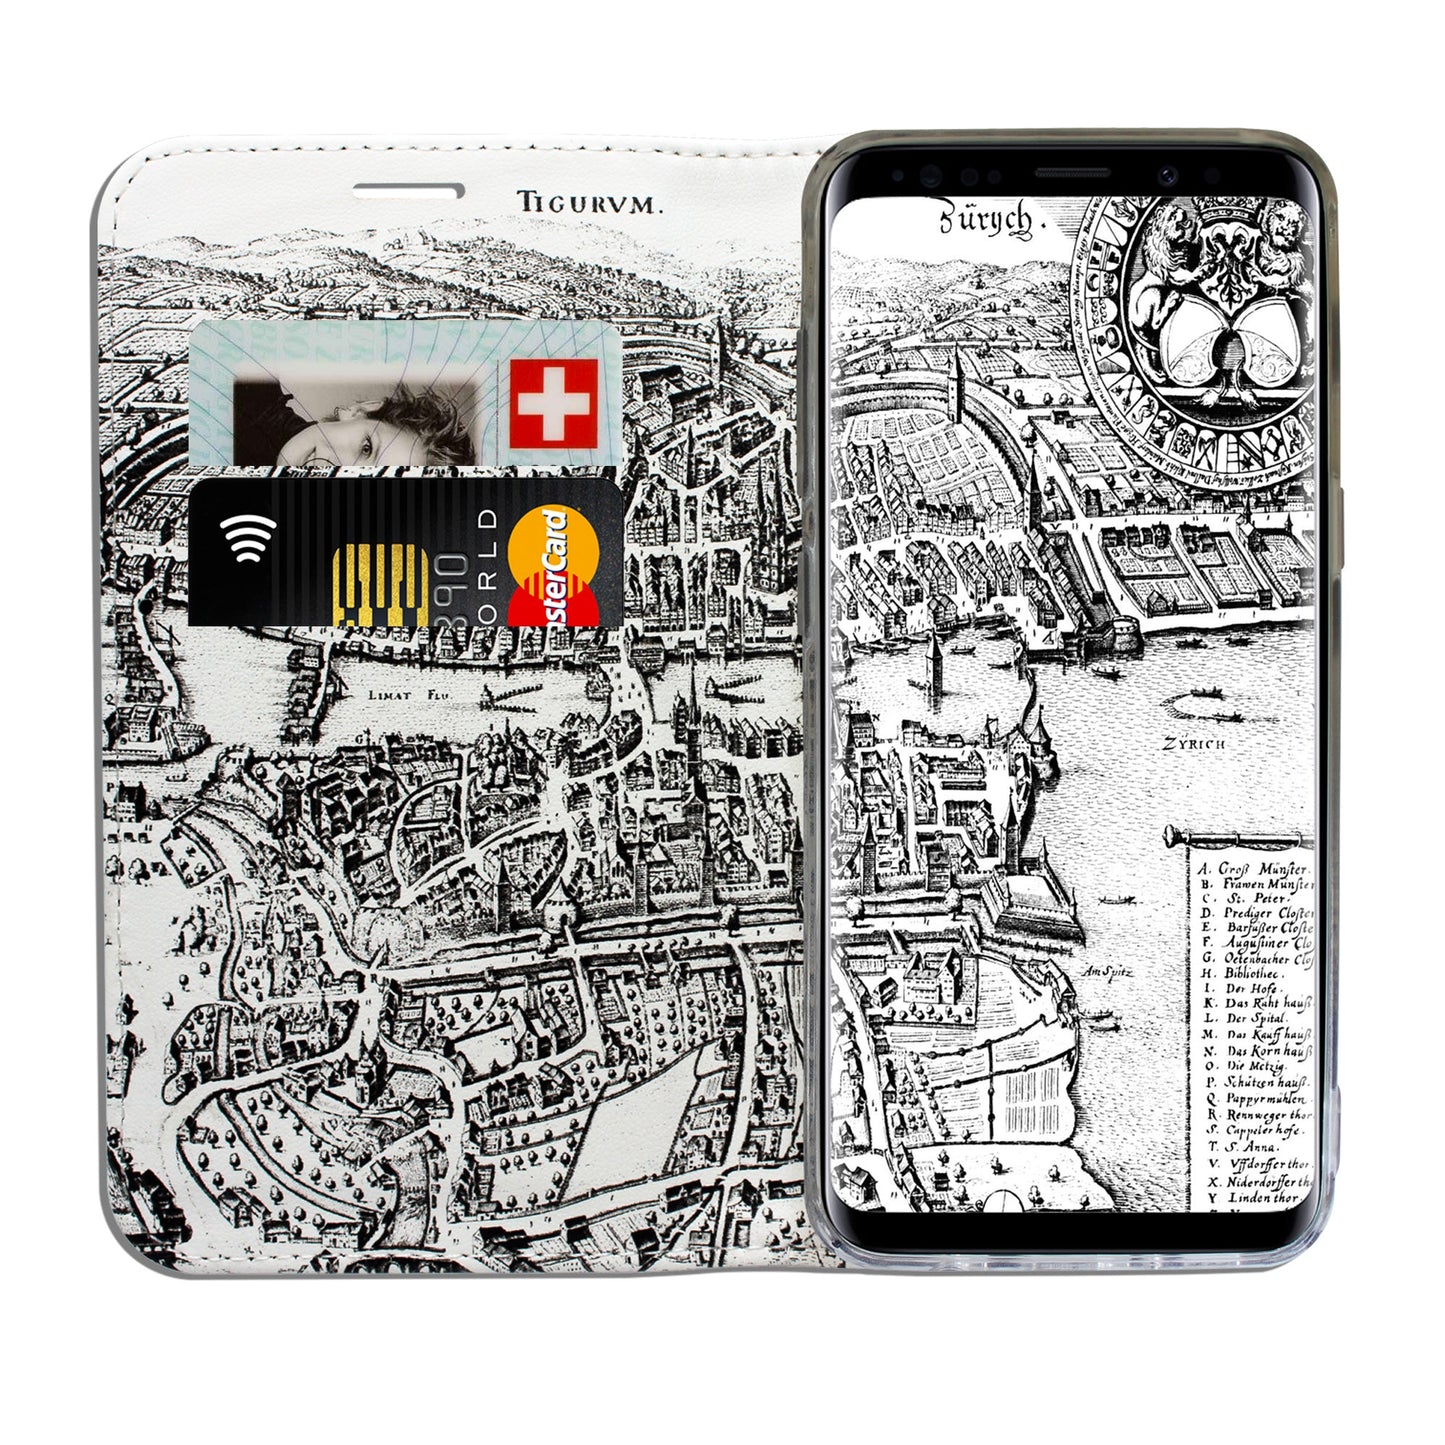 Zürich City von Oben Panorama Case für Samsung Galaxy S8